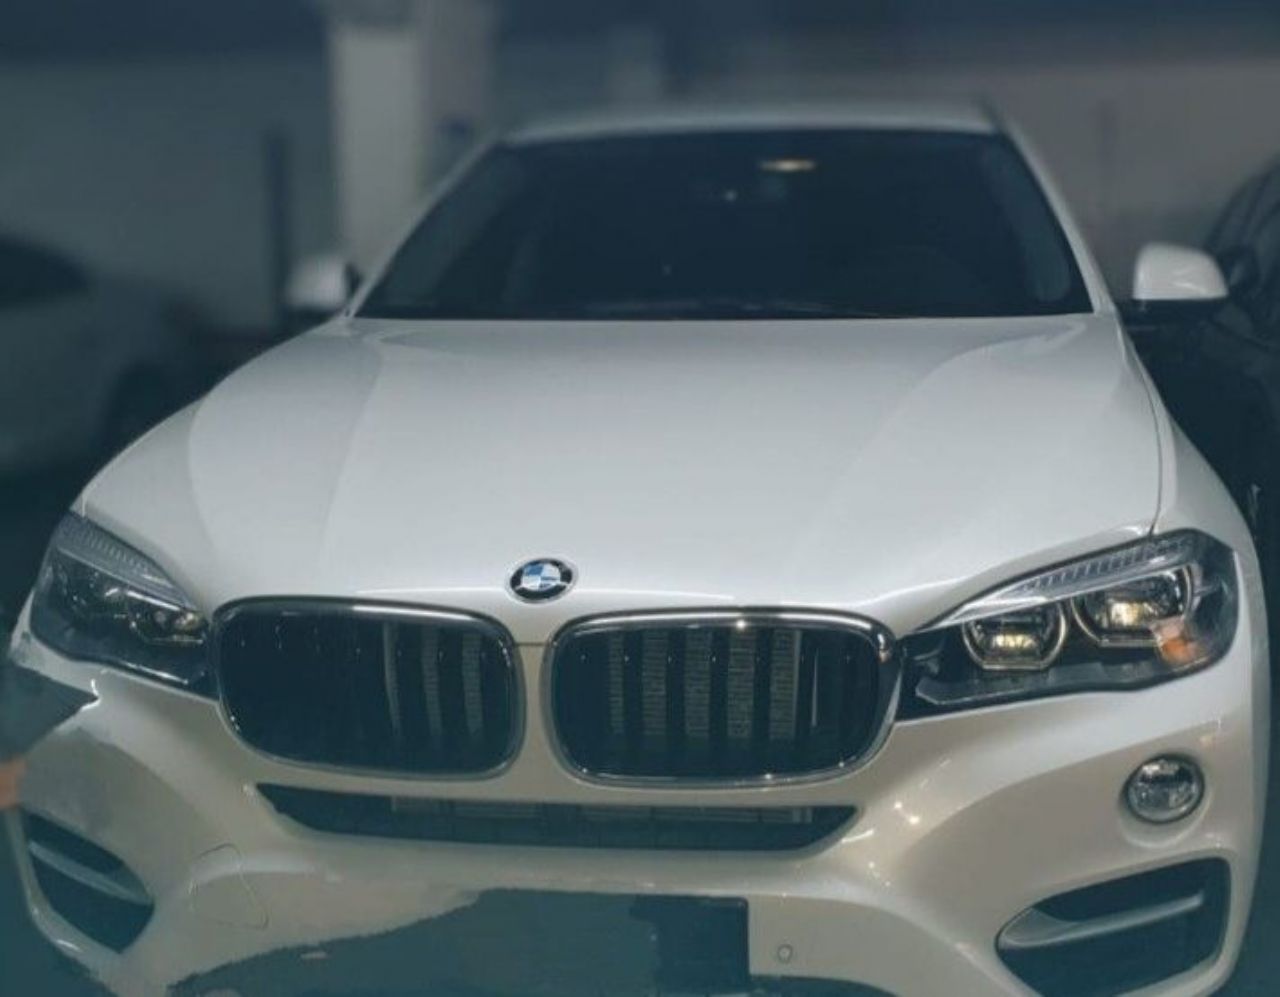 BMW X6 Usado en Mendoza, deRuedas